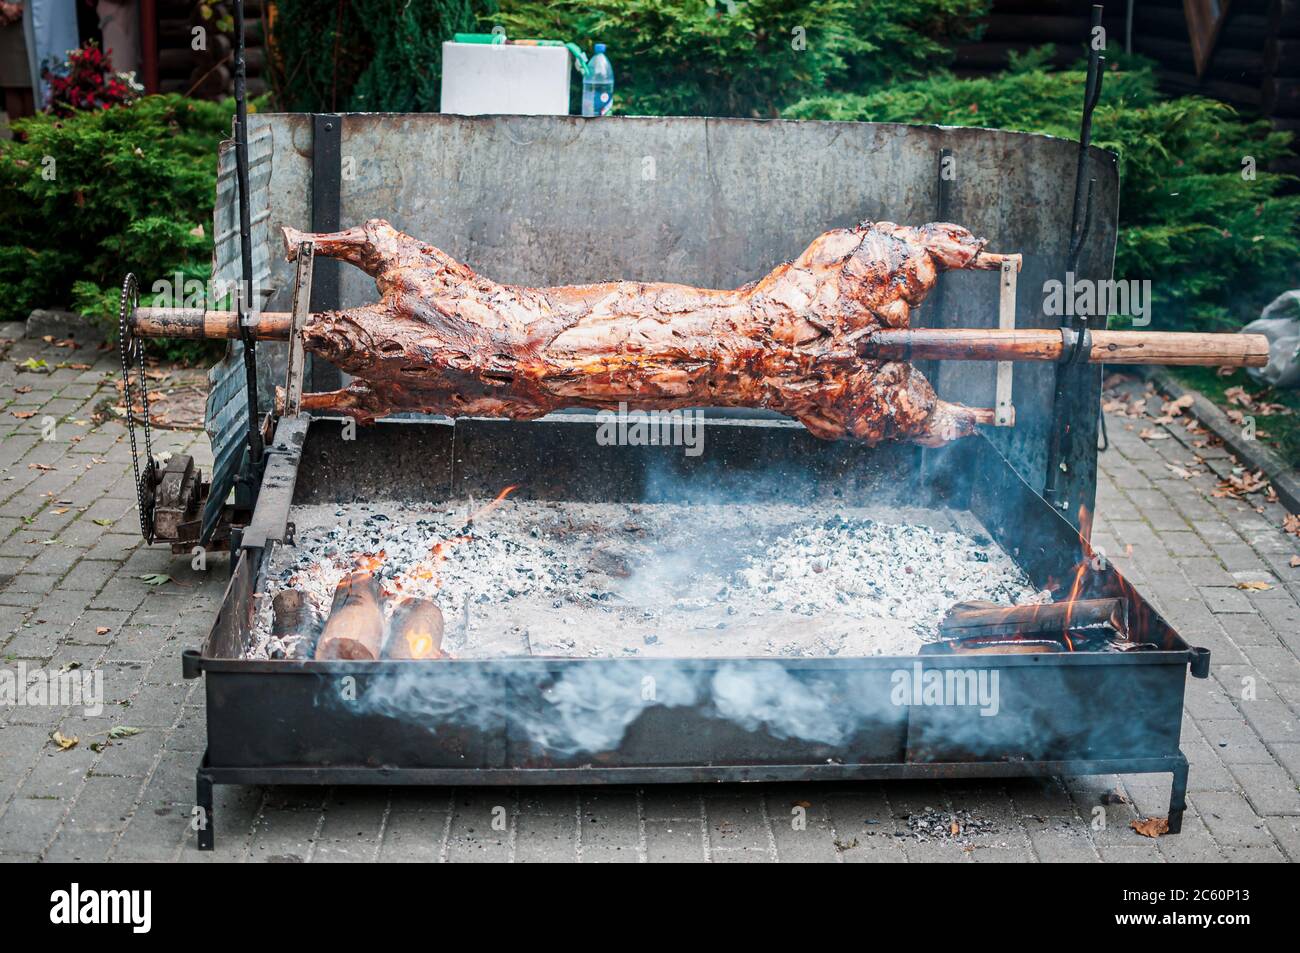 La carcassa del vitello viene cotta sulla griglia, ruota su uno spiedo Foto Stock